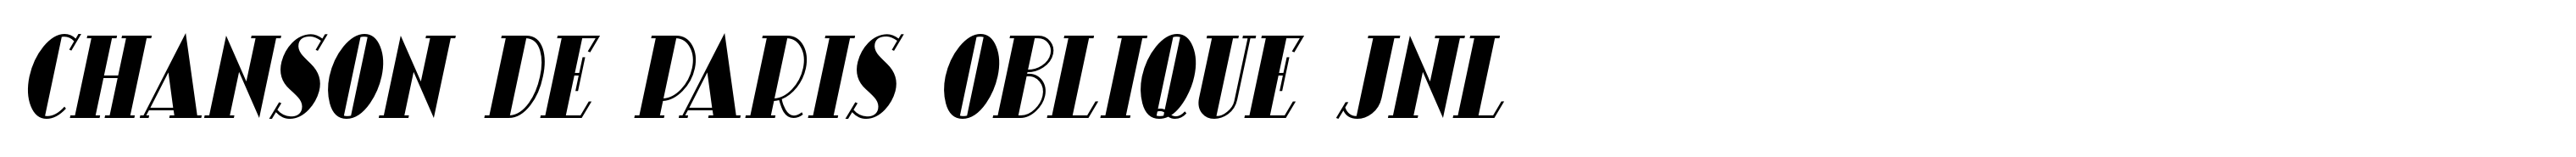 Chanson De Paris Oblique JNL